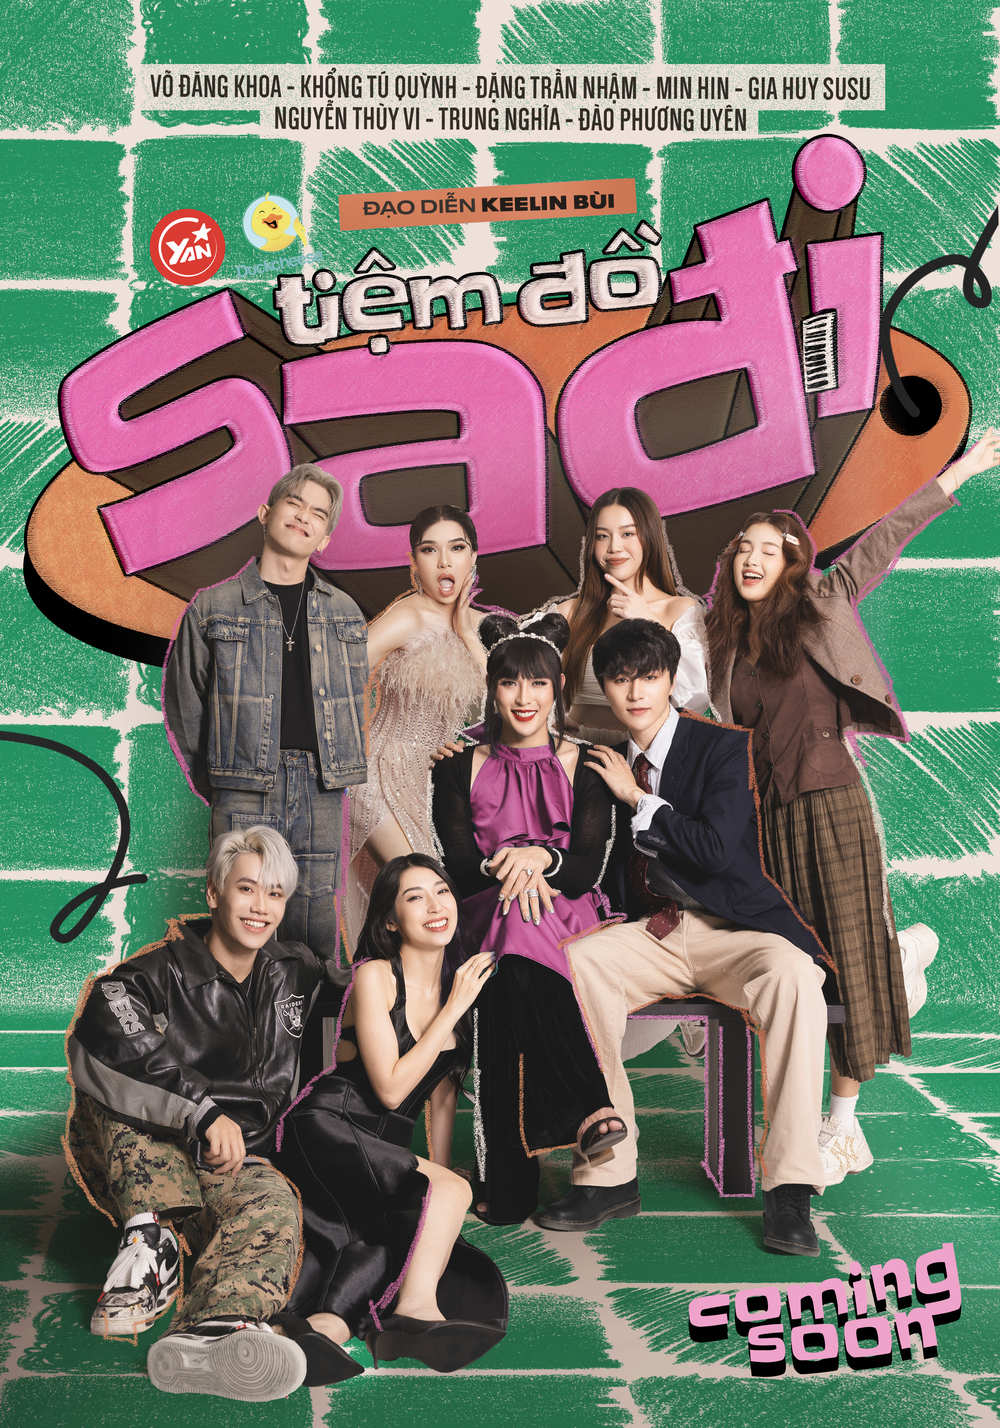  
Poster sitcom "Tiệm Đồ Sadi" nhận được lượng tương tác lớn từ cộng đồng mạng.